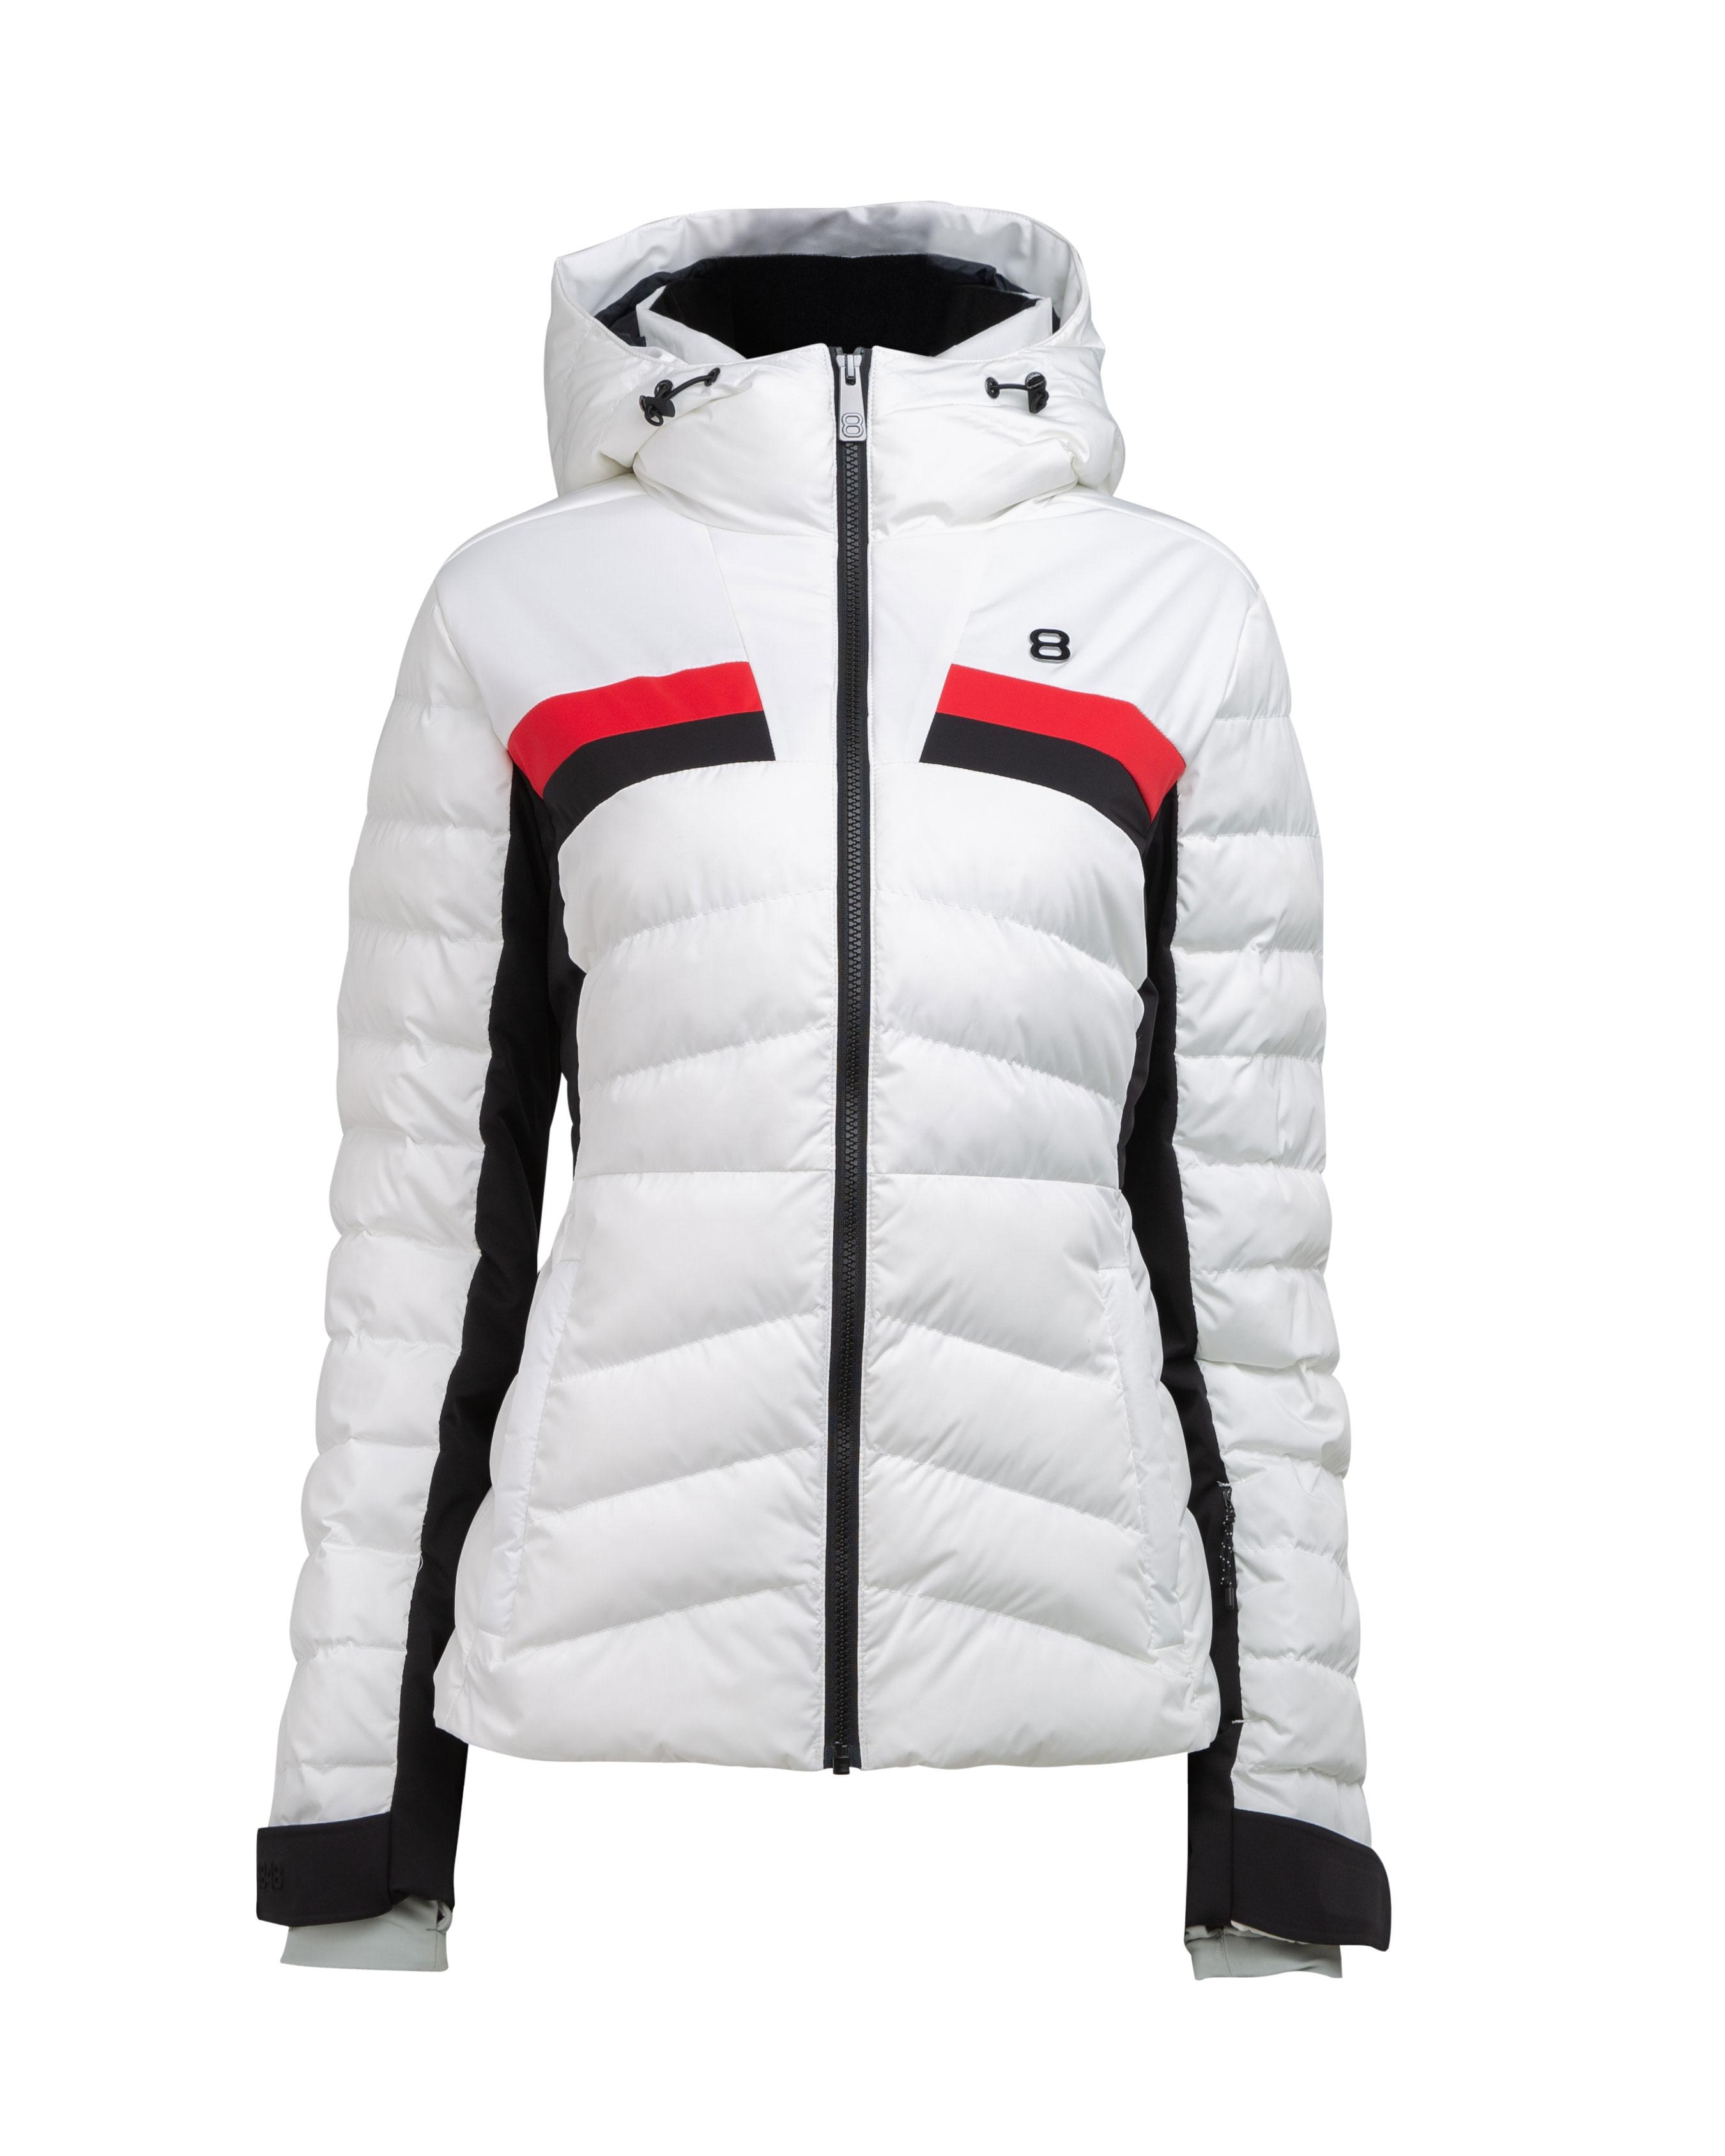 Lucia W Jacket Blanc - White ski jacket women